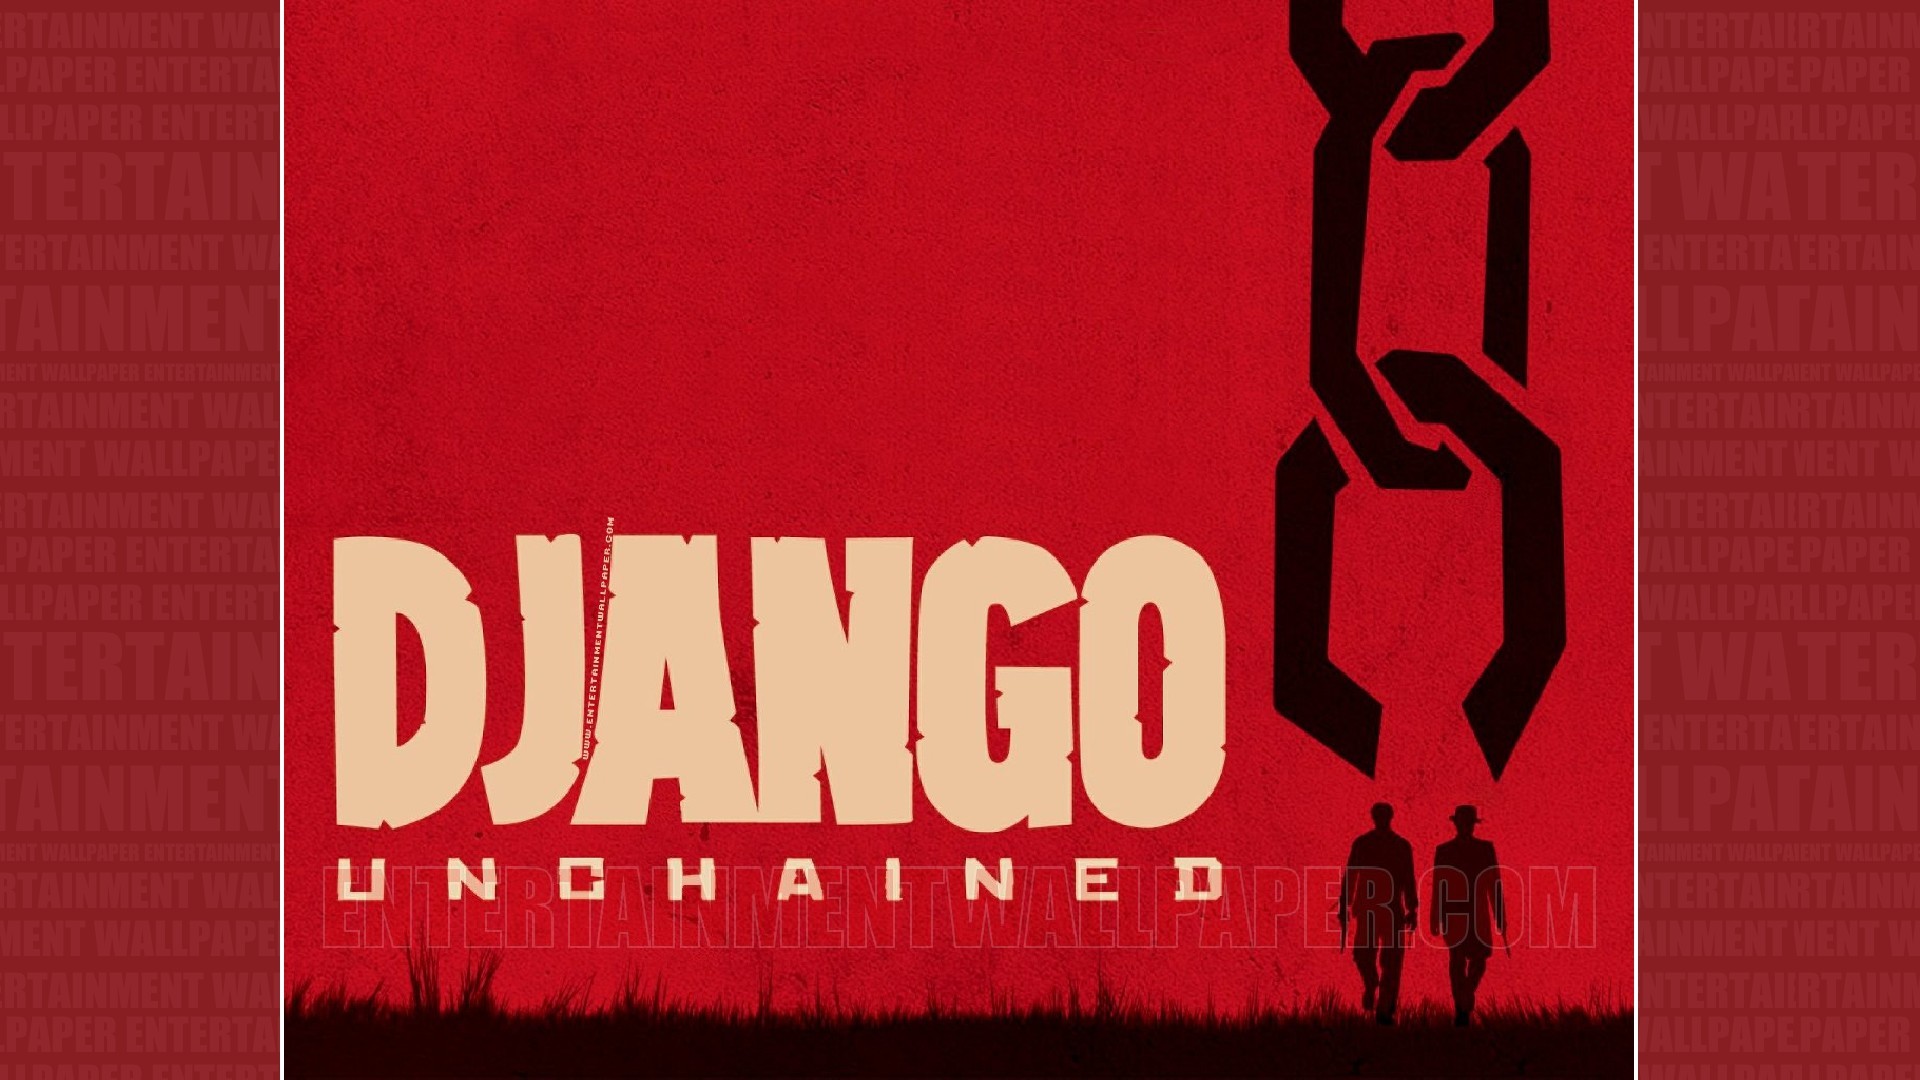 1920x1080 Django Unchained Wallpaper - Original size, download now.